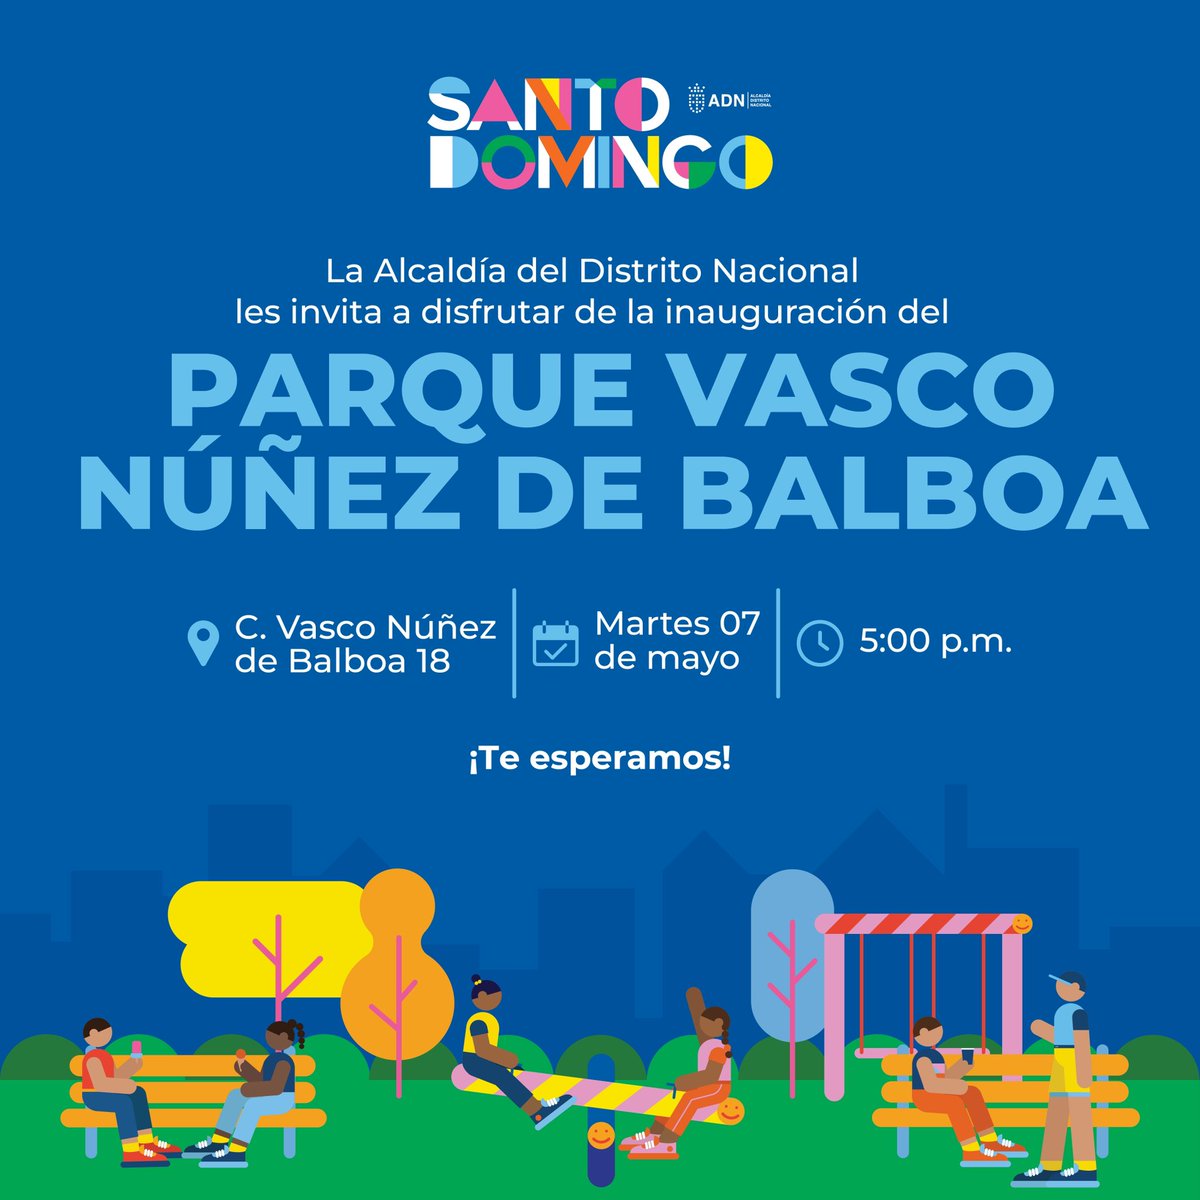 ¡Les invitamos a la gran inauguración del Parque Vasco Núñez de Balboa! ⏰Este martes 7 de mayo a las 5:00PM. 📍Calle Vasco Núñez de Balboa 18. ¡Les esperamos!